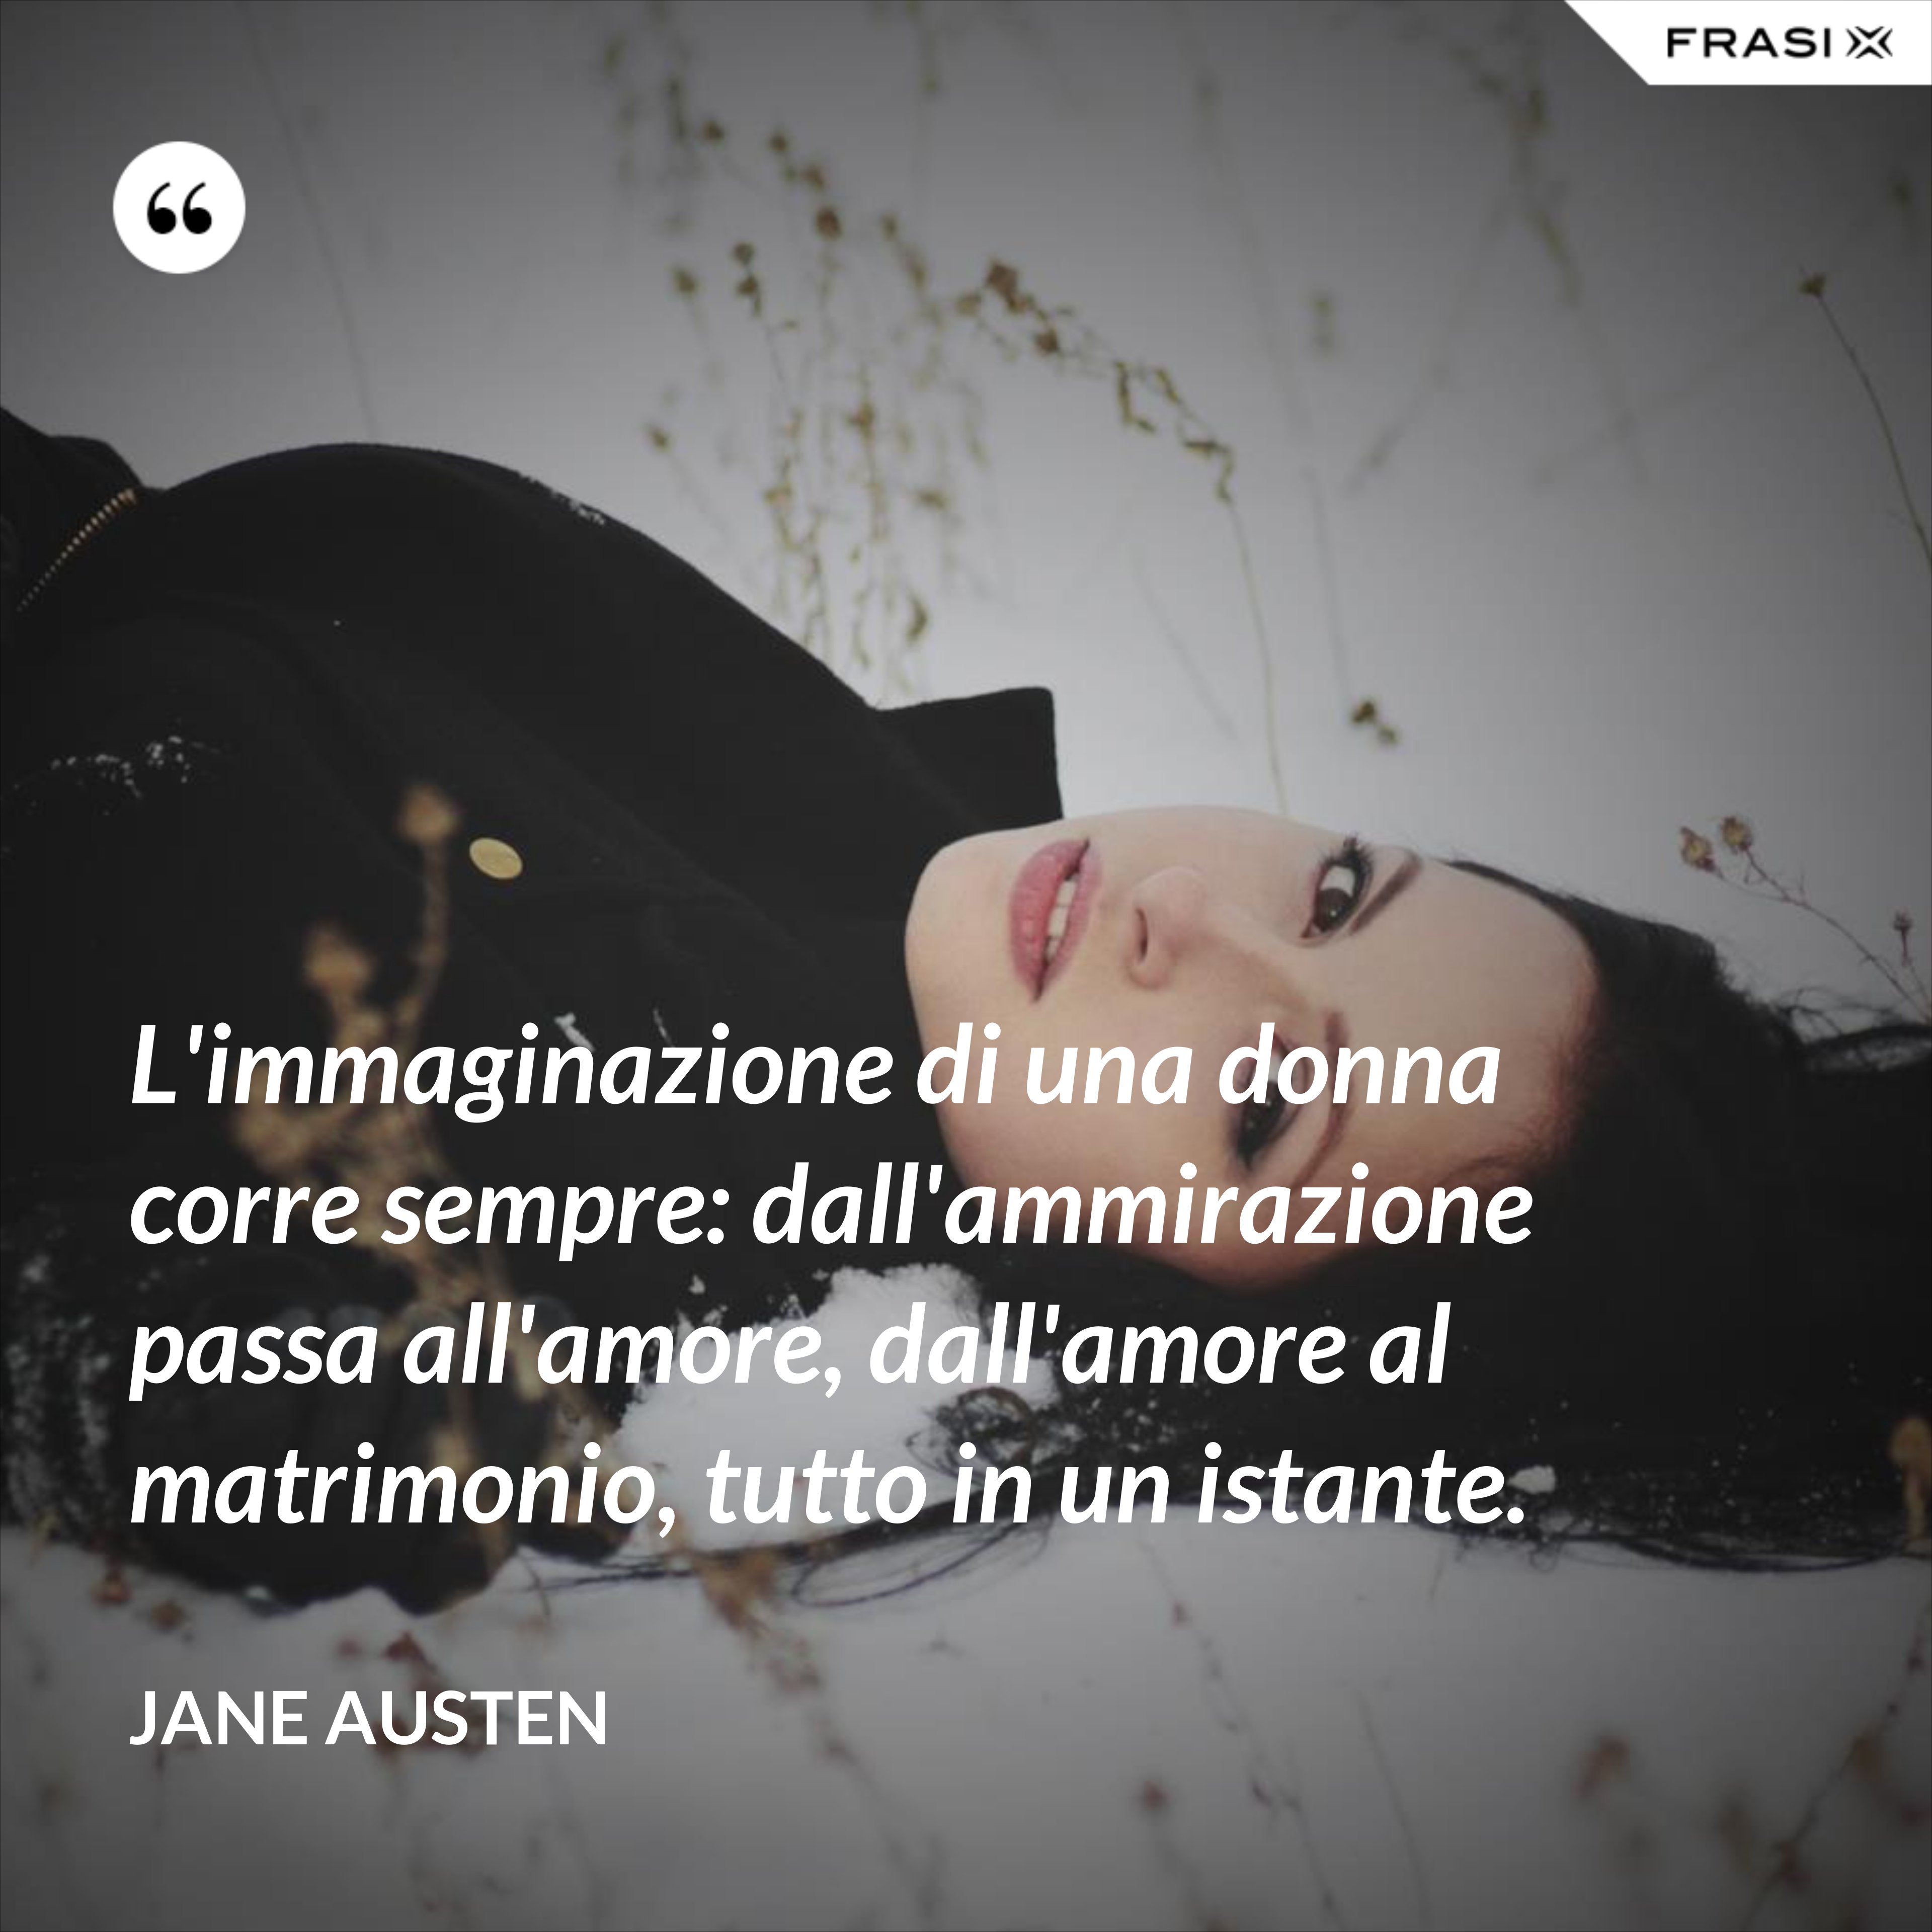 L'immaginazione di una donna corre sempre: dall'ammirazione passa all'amore, dall'amore al matrimonio, tutto in un istante. - Jane Austen